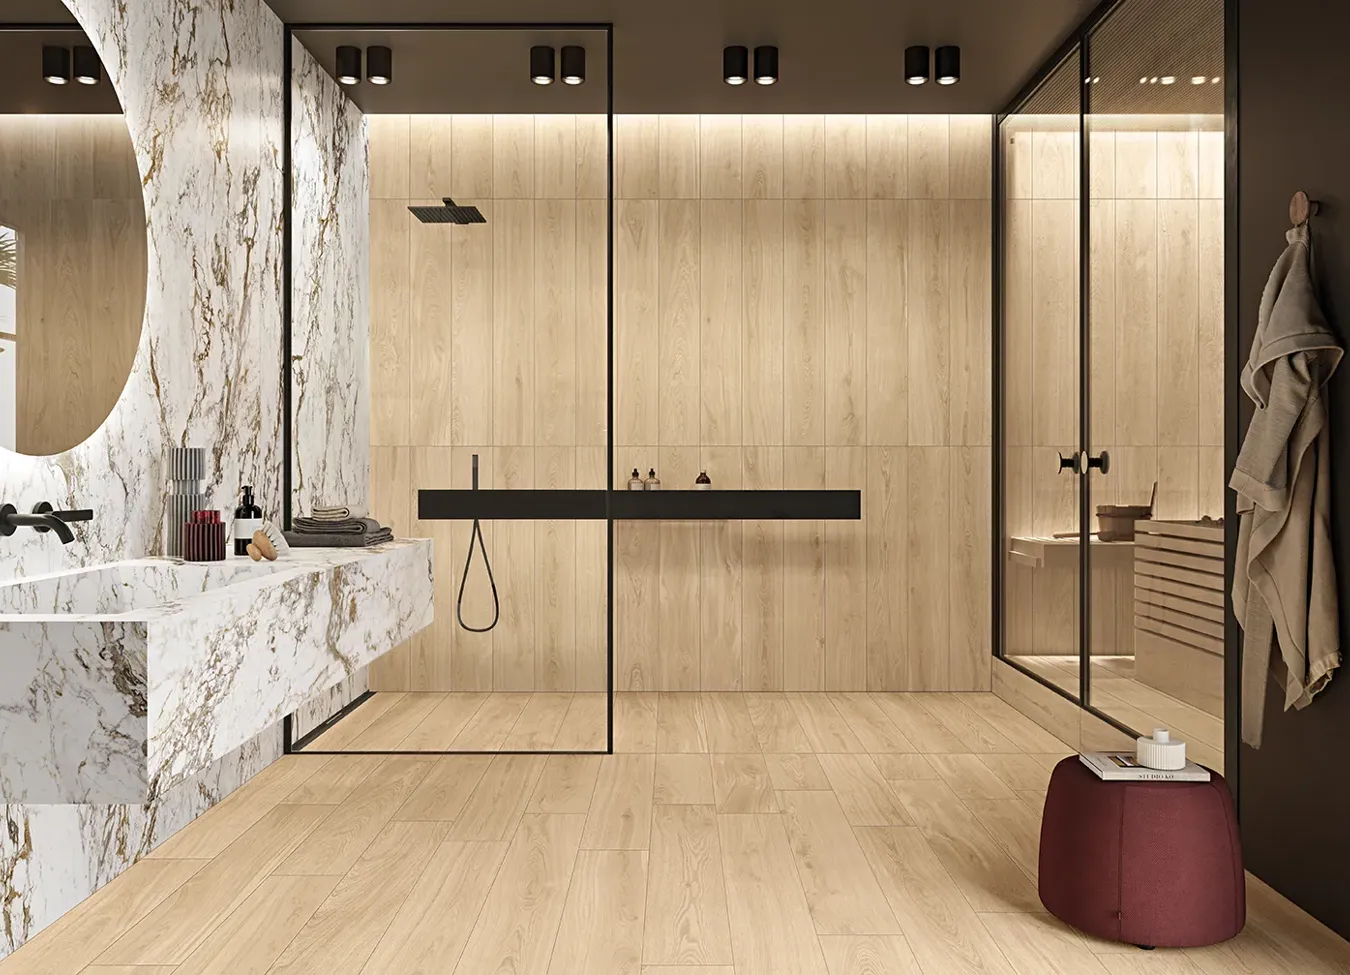 Bagno sofisticato con pavimento e piatto doccia in listelli rettangolari di gres porcellanato effetto legno, che aggiungono calore e stile naturale.